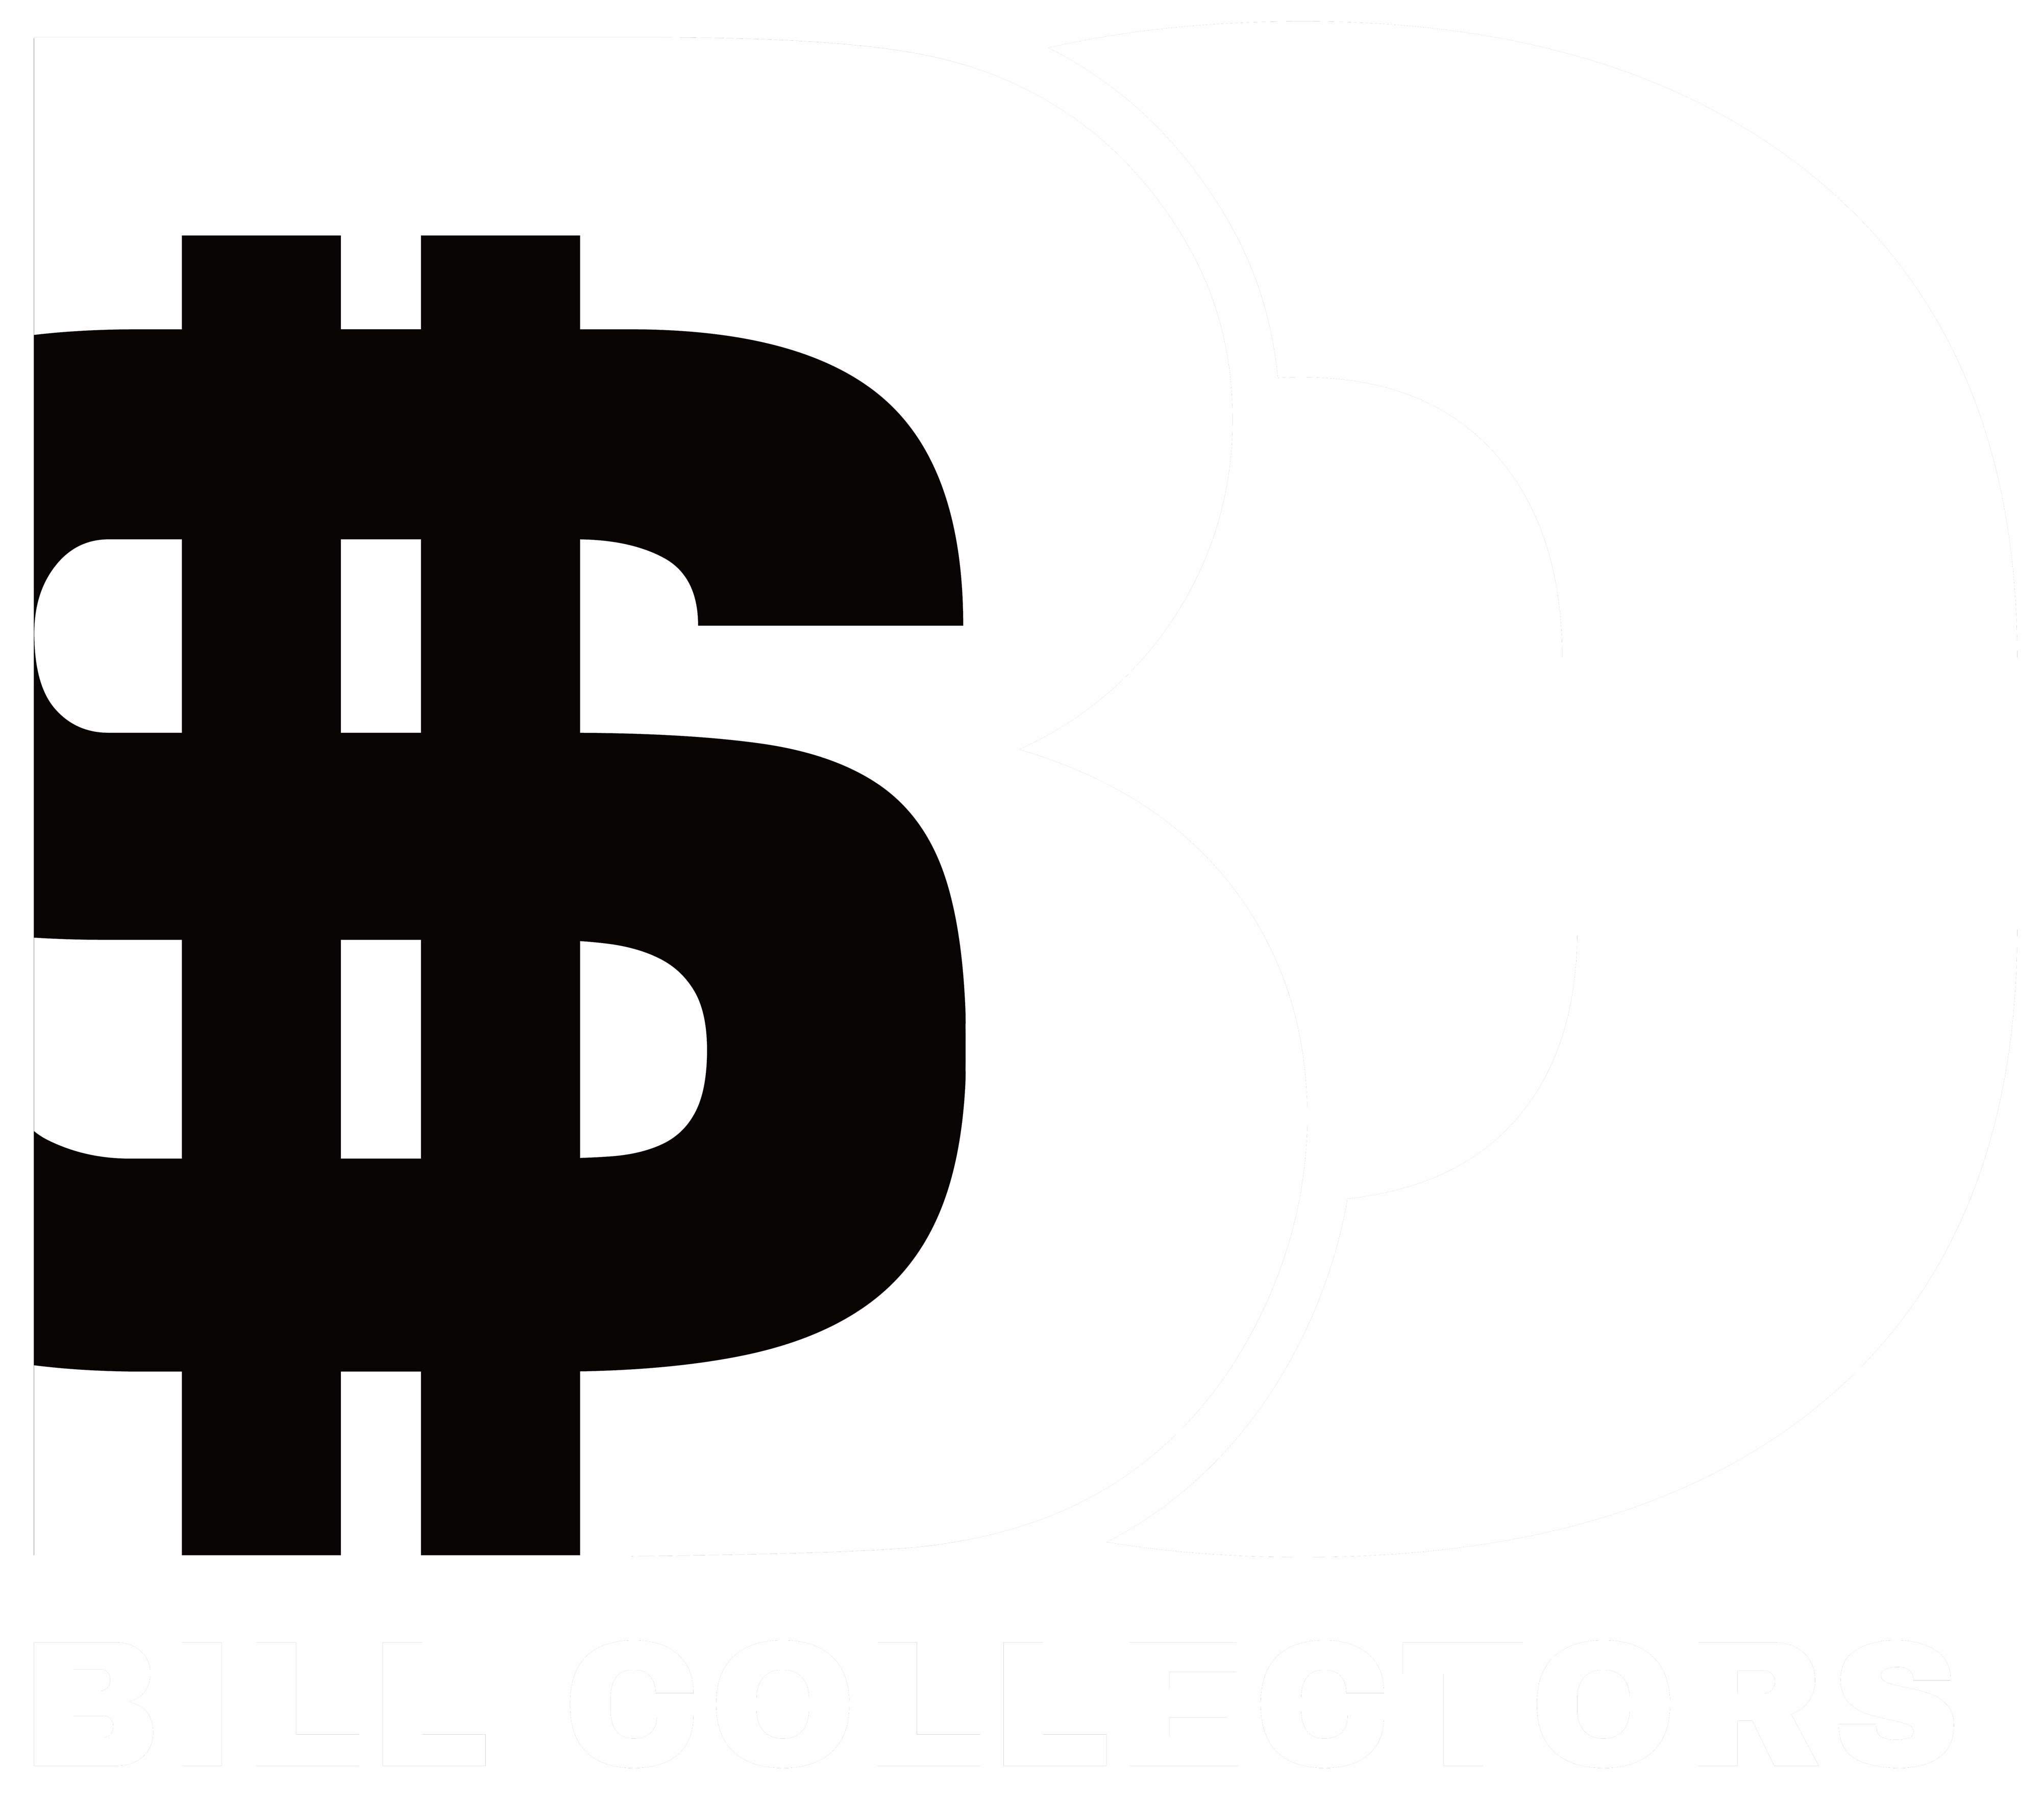 Bill Collectors